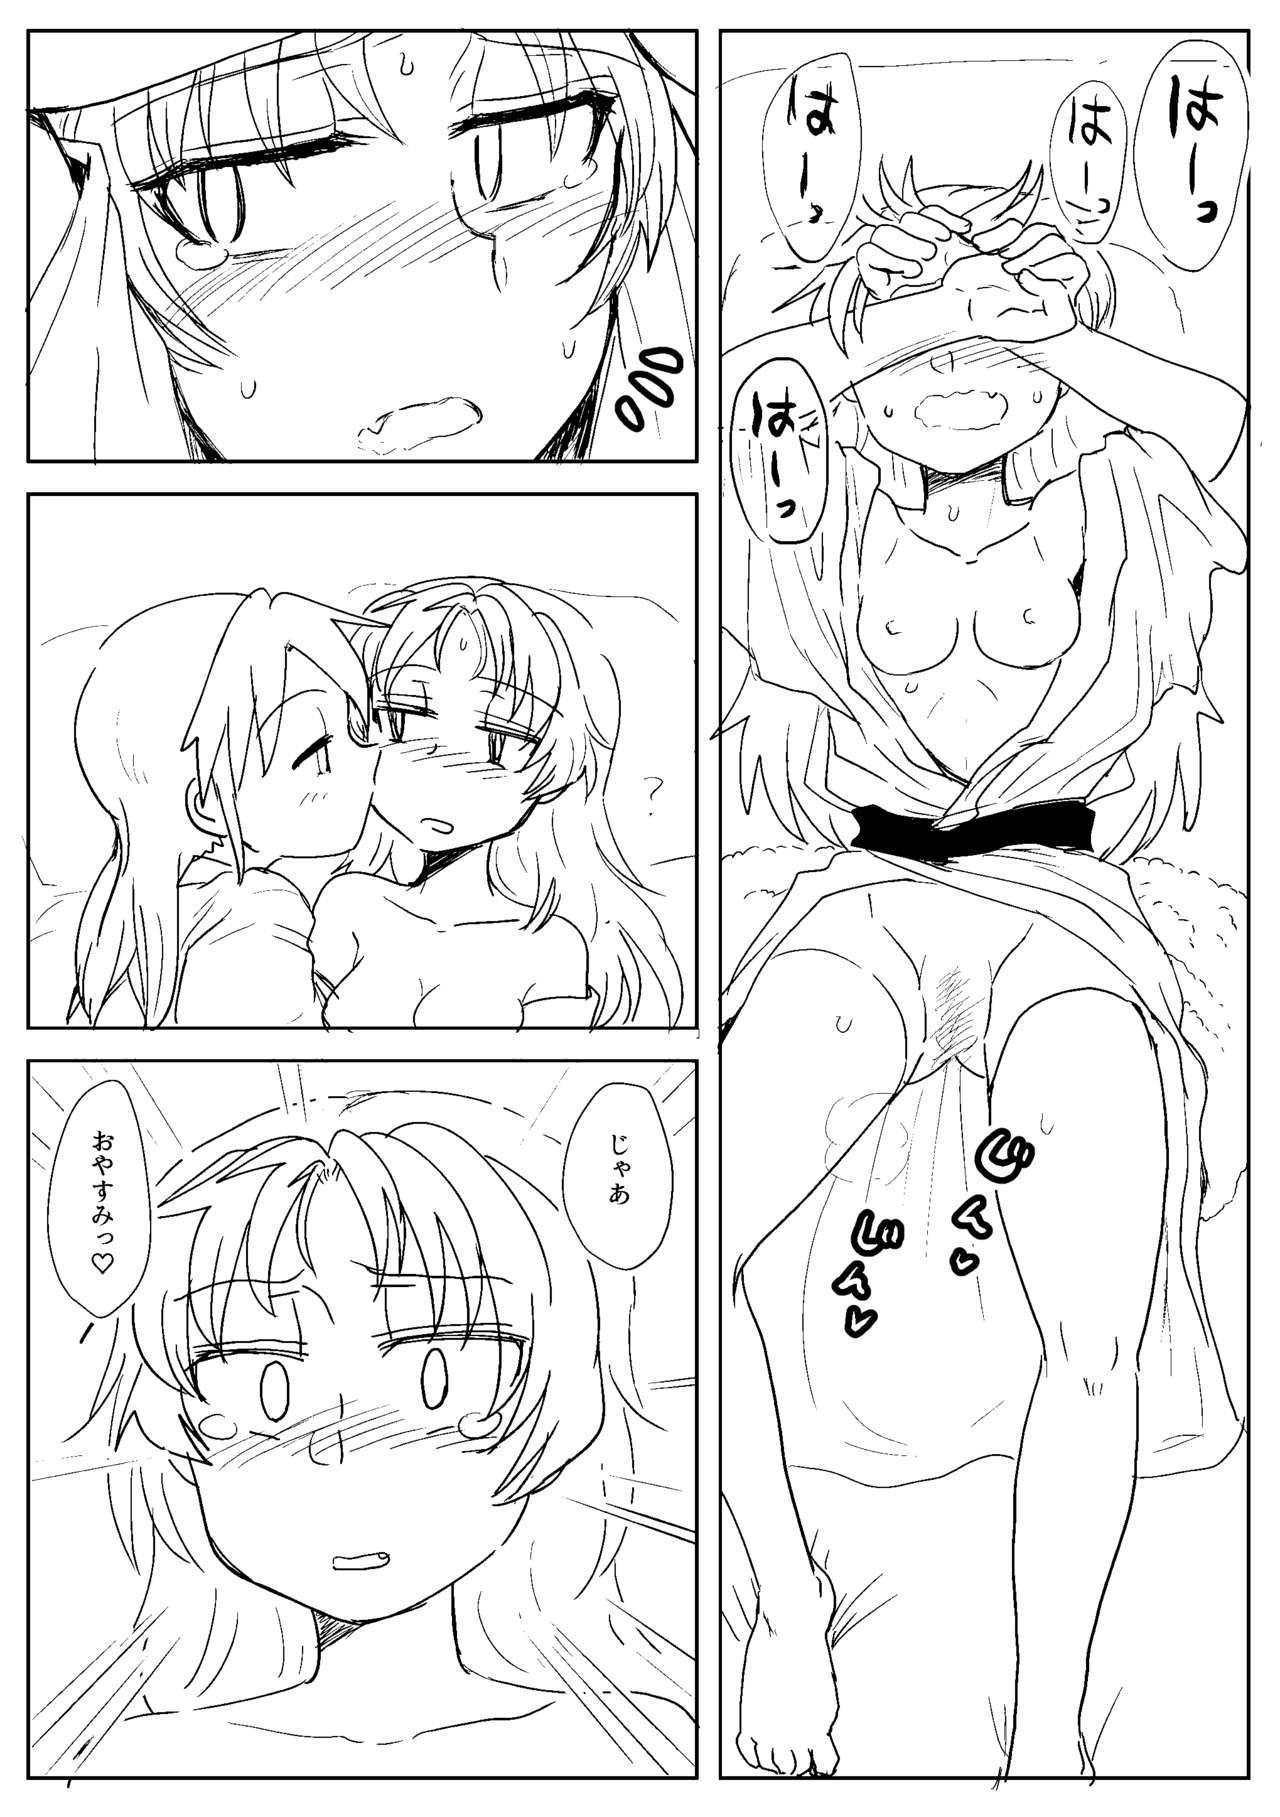 Gay Blondhair Sawaranai Kaname VS Sakura-san - Puella magi madoka magica Tan - Page 6